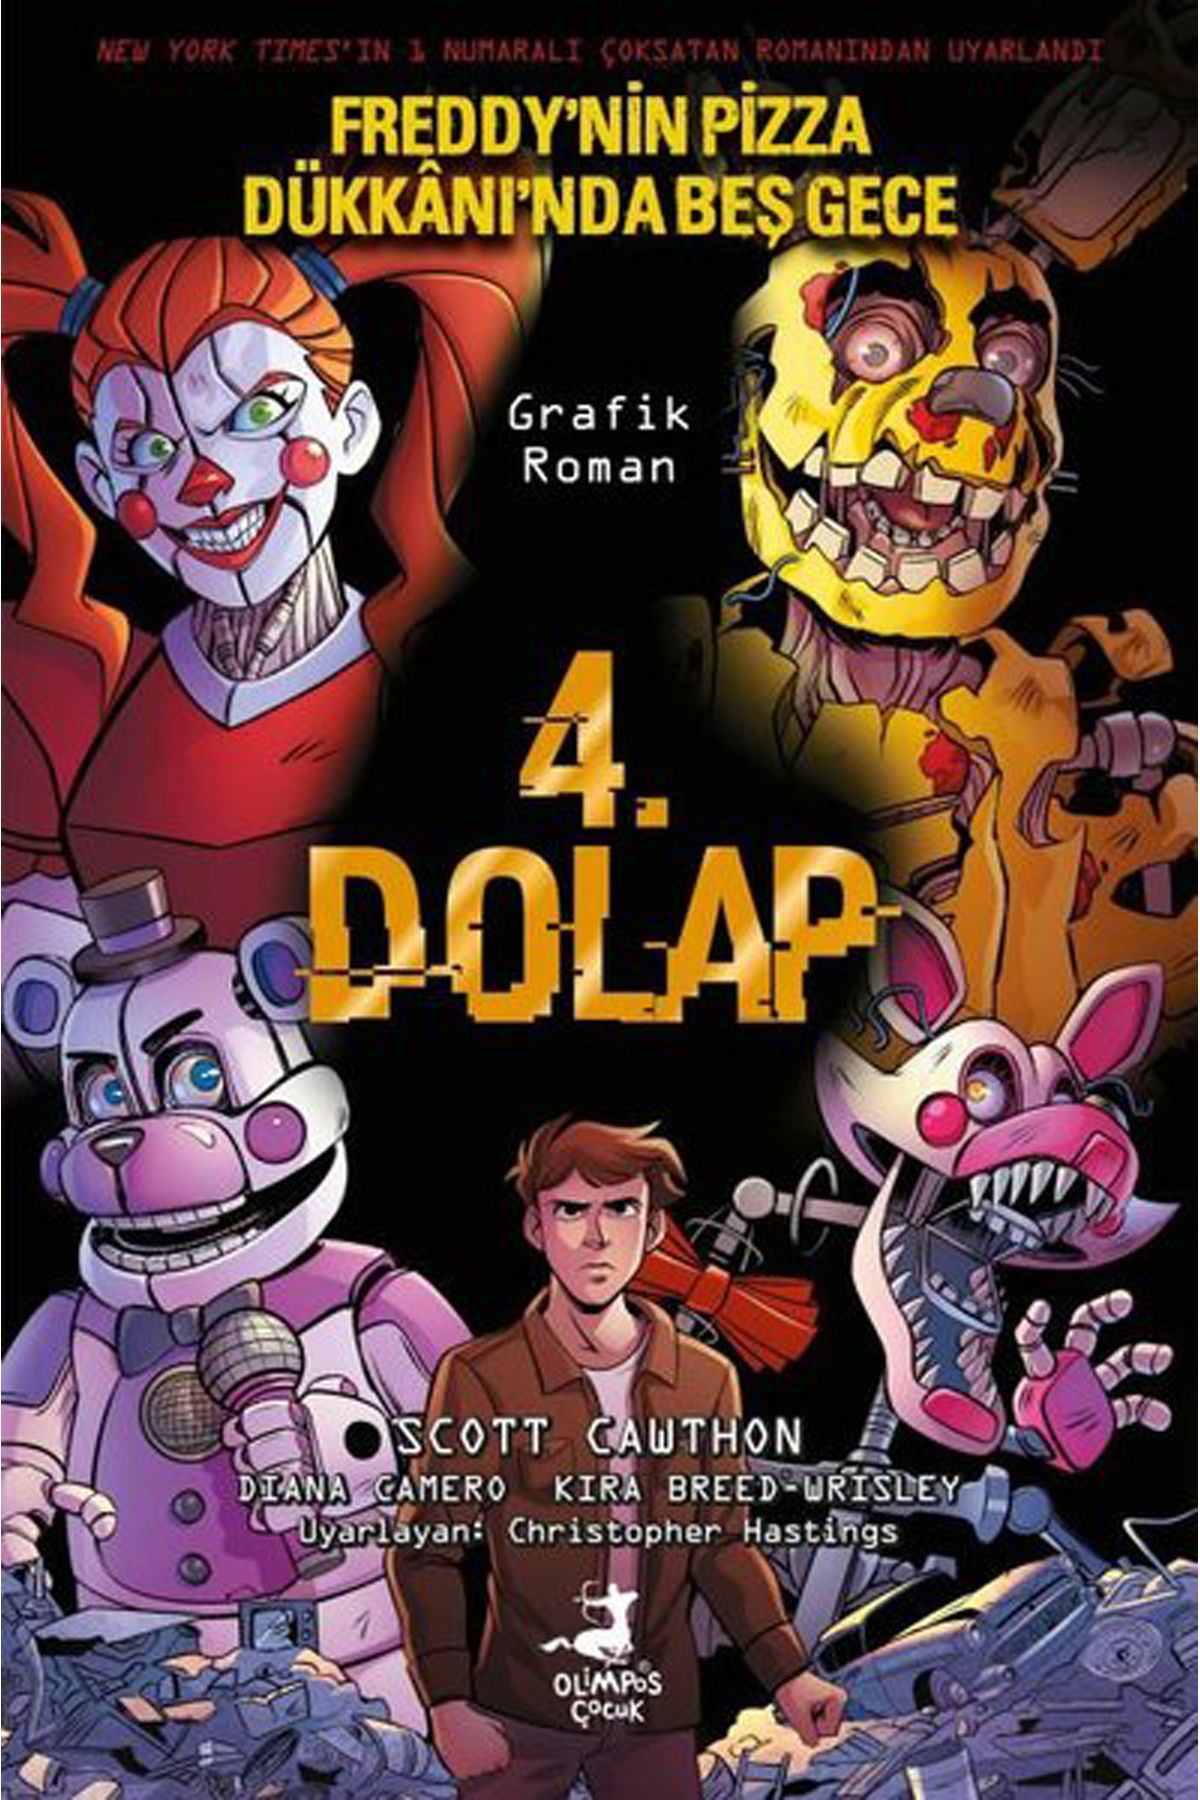 Olimpos Yayınları 4. Dolap- Freddy'nin Pizza Dükkanı'nda Beş Gece 3. Kitap (RENKLİ ÇİZGİ ROMAN)